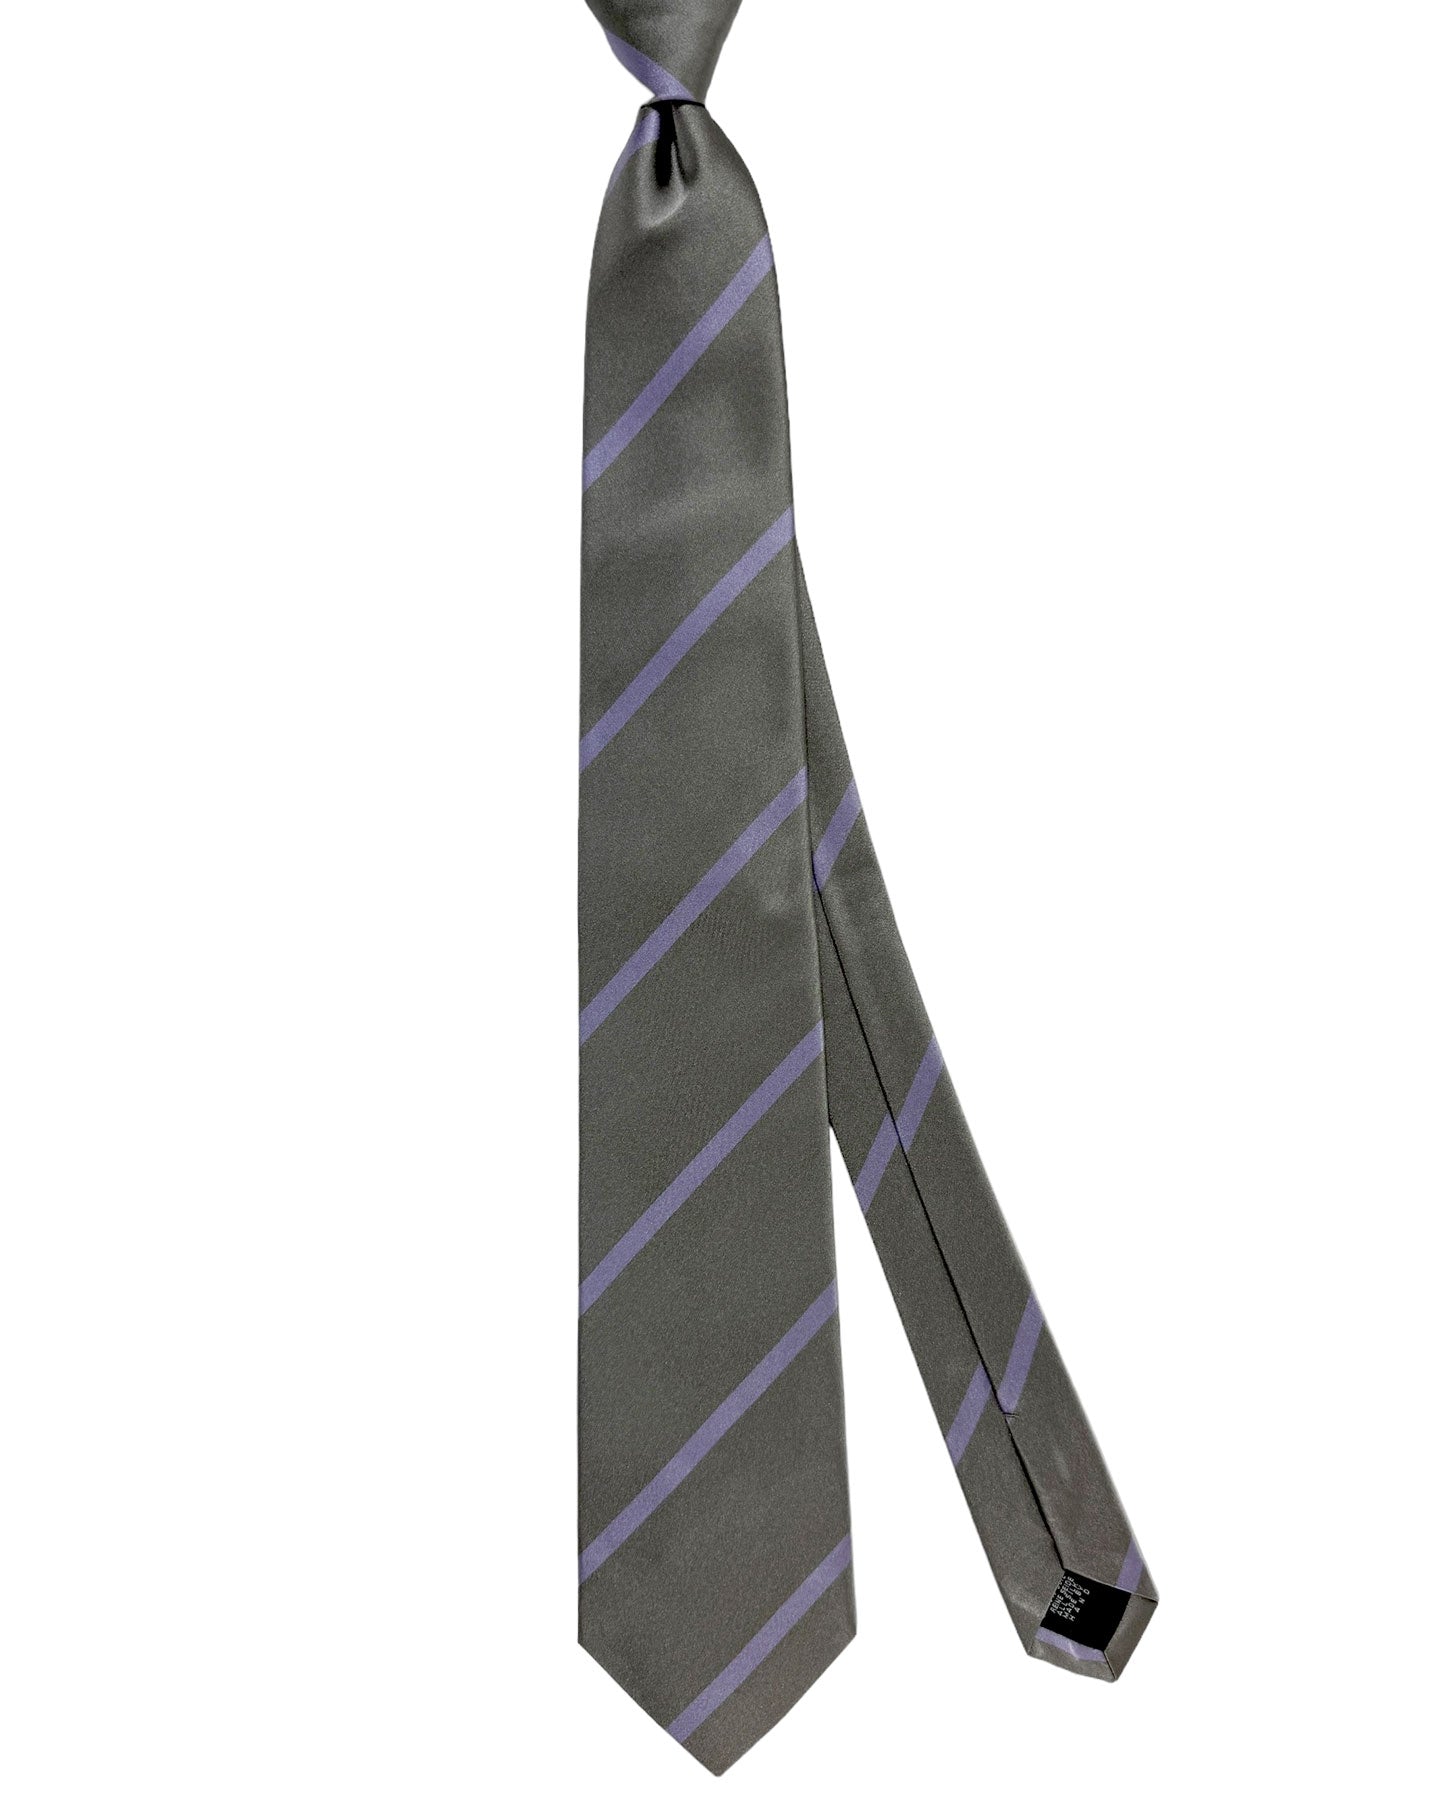 E. Marinella Tie Gray Lilac Stripes Design